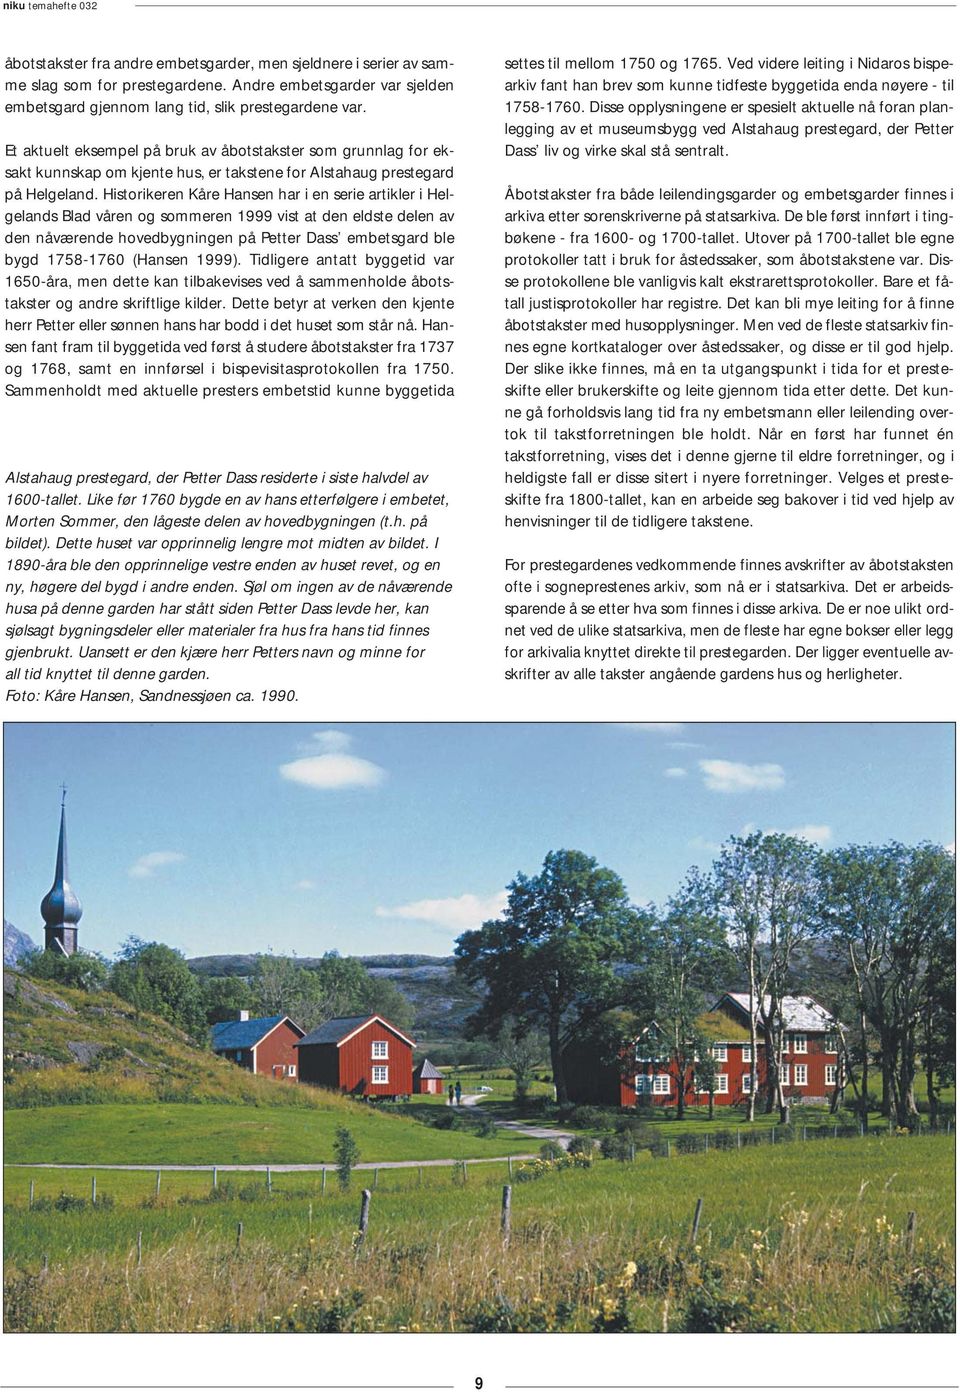 Historikeren Kåre Hansen har i en serie artikler i Helgelands Blad våren og sommeren 1999 vist at den eldste delen av den nåværende hovedbygningen på Petter Dass embetsgard ble bygd 1758-1760 (Hansen